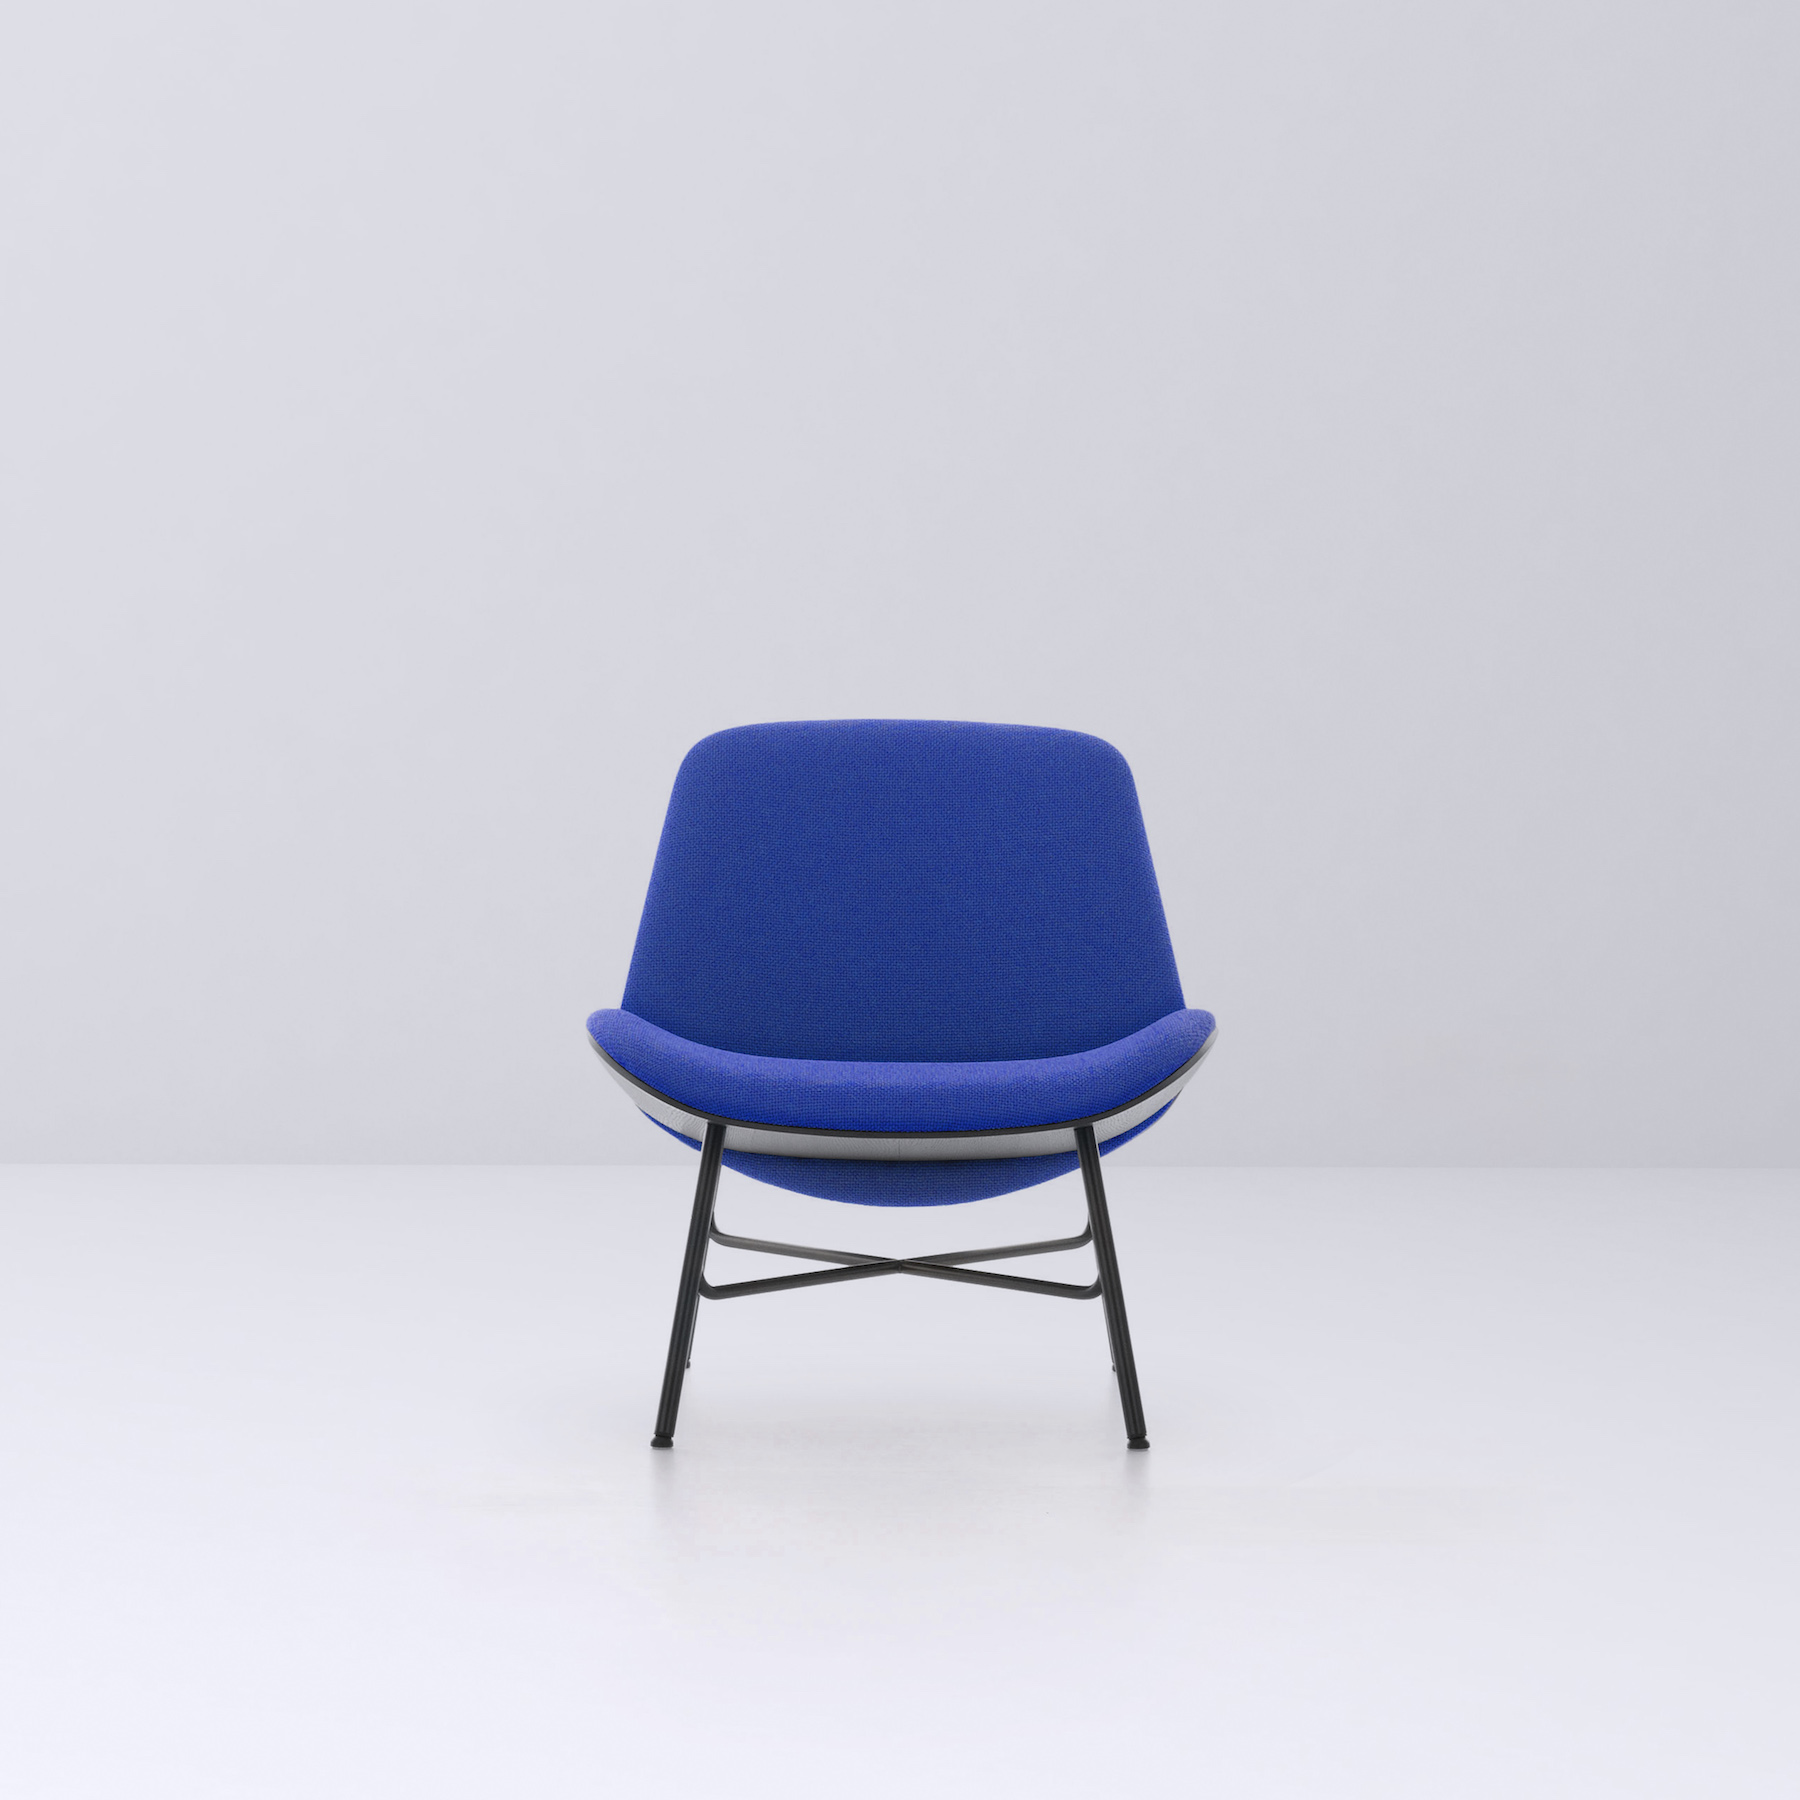 Nihan Chair by Bosetti Design Studio